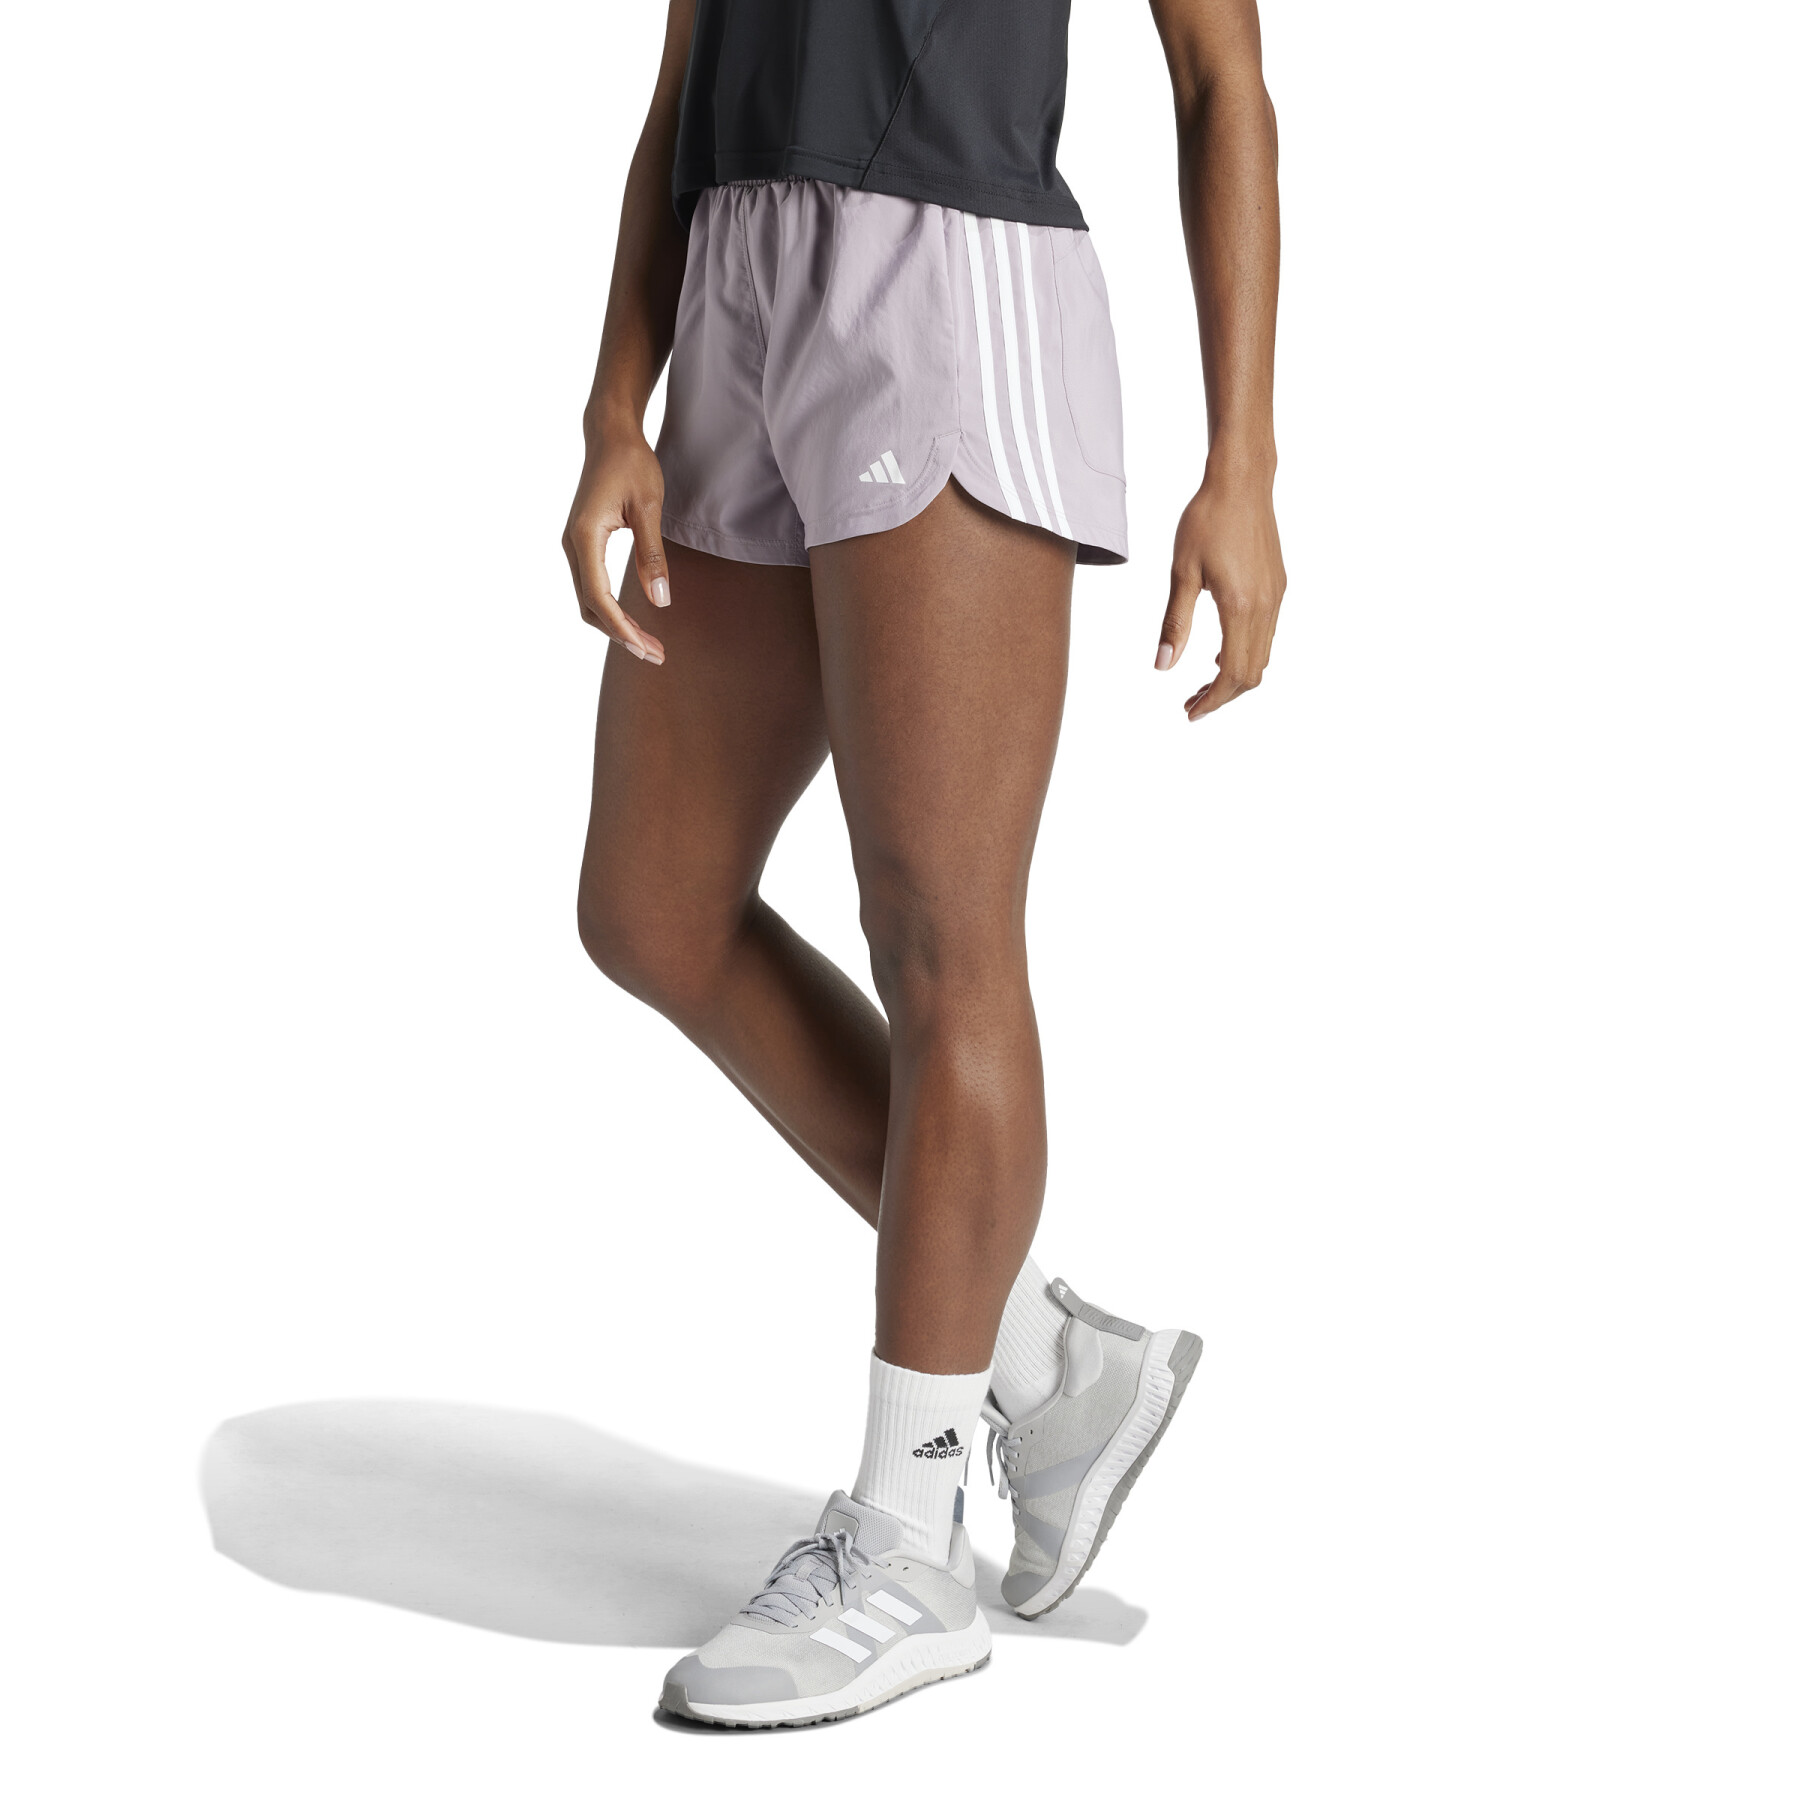 Women's high waist shorts adidas Pacer 3 Stripes